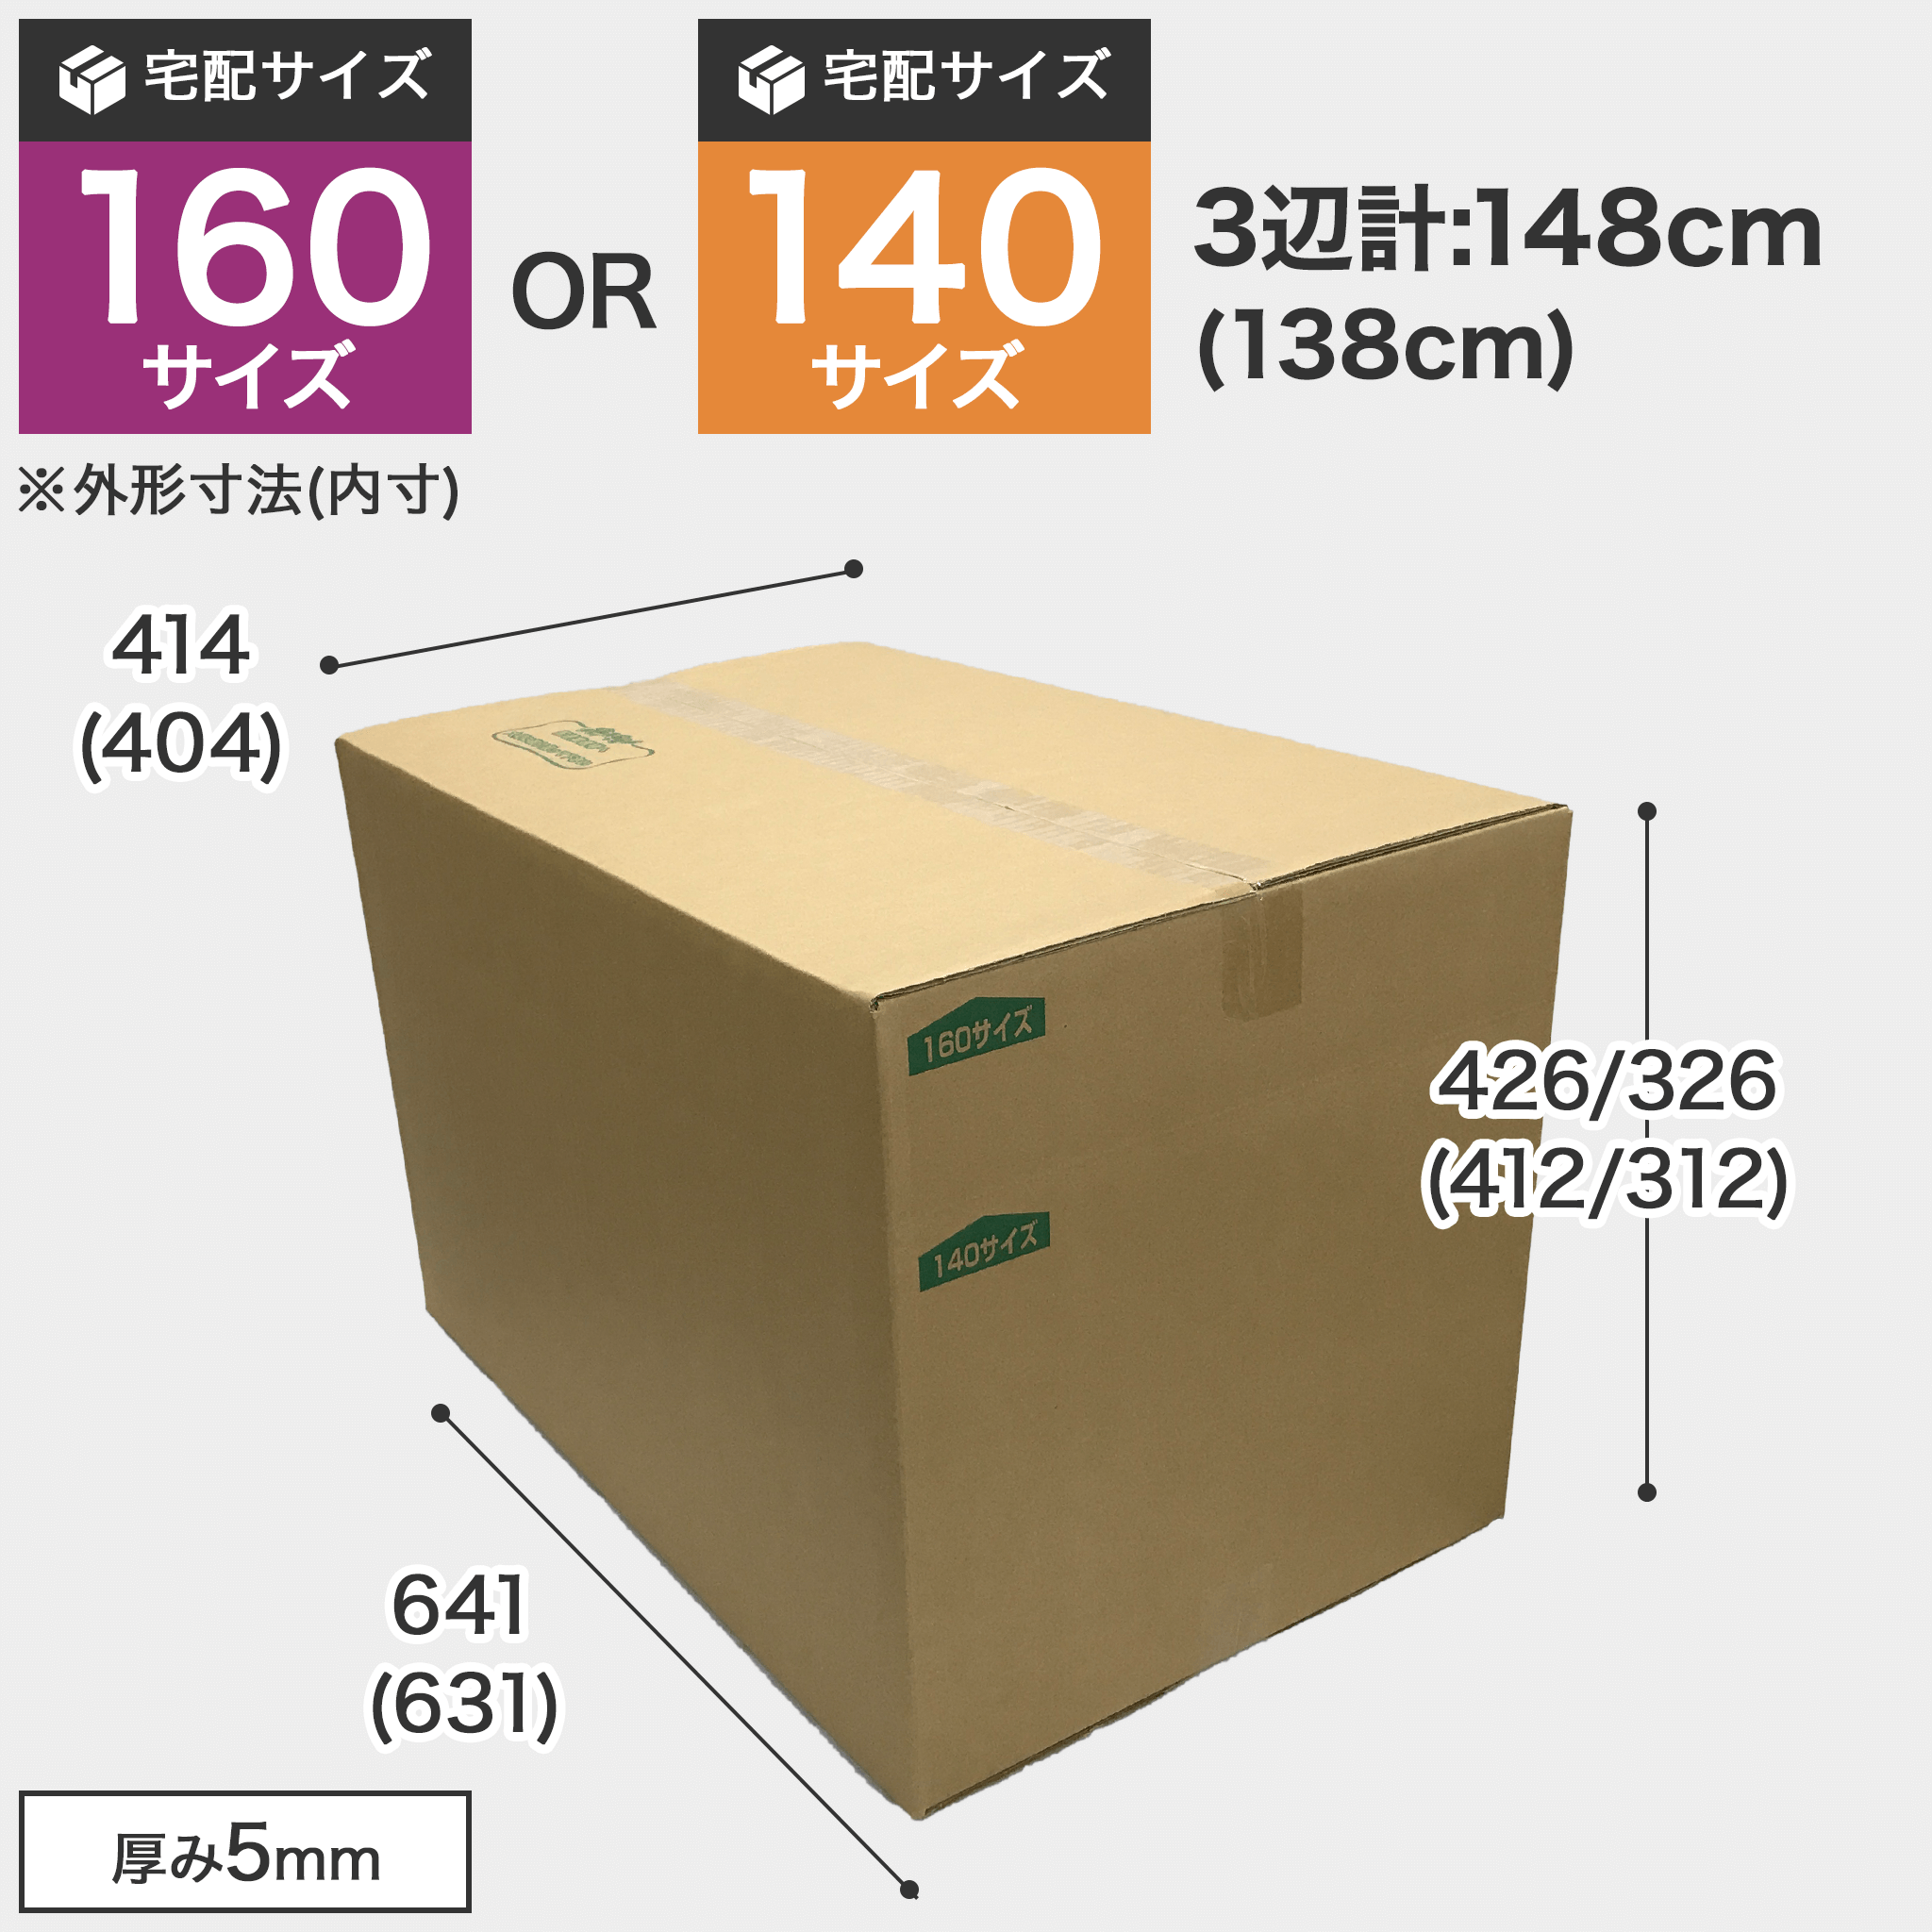 BOX-036【送料込】ダンボール箱 160/140サイズ TD-9 【高さ調整箱】